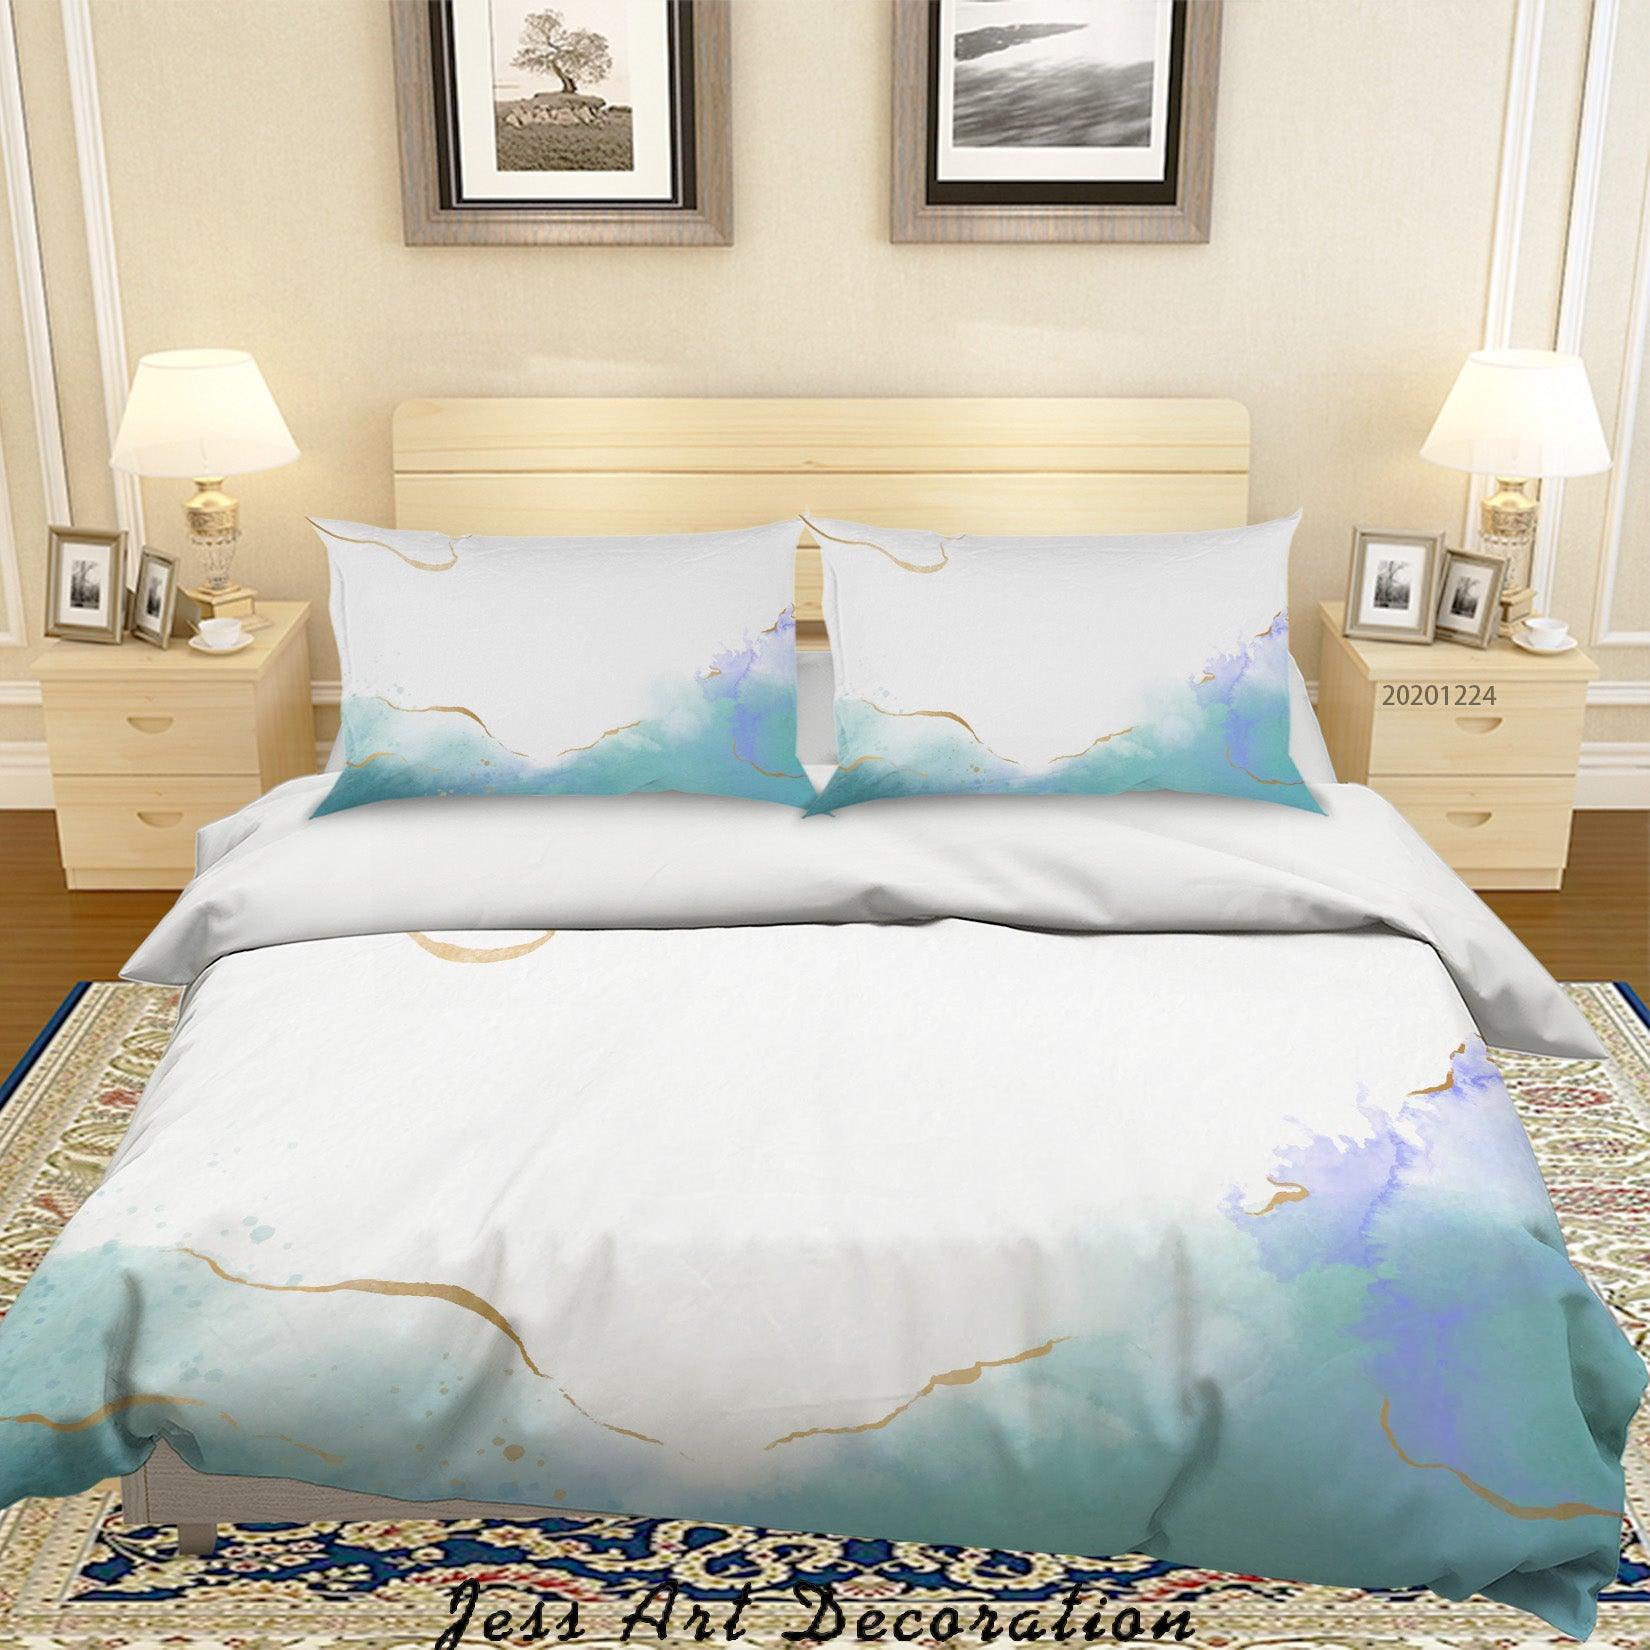 3D Watercolor Marble Texture Quilt Cover Set Bedding Set Duvet Cover Pillowcases 171 LQH- Jess Art Decoration